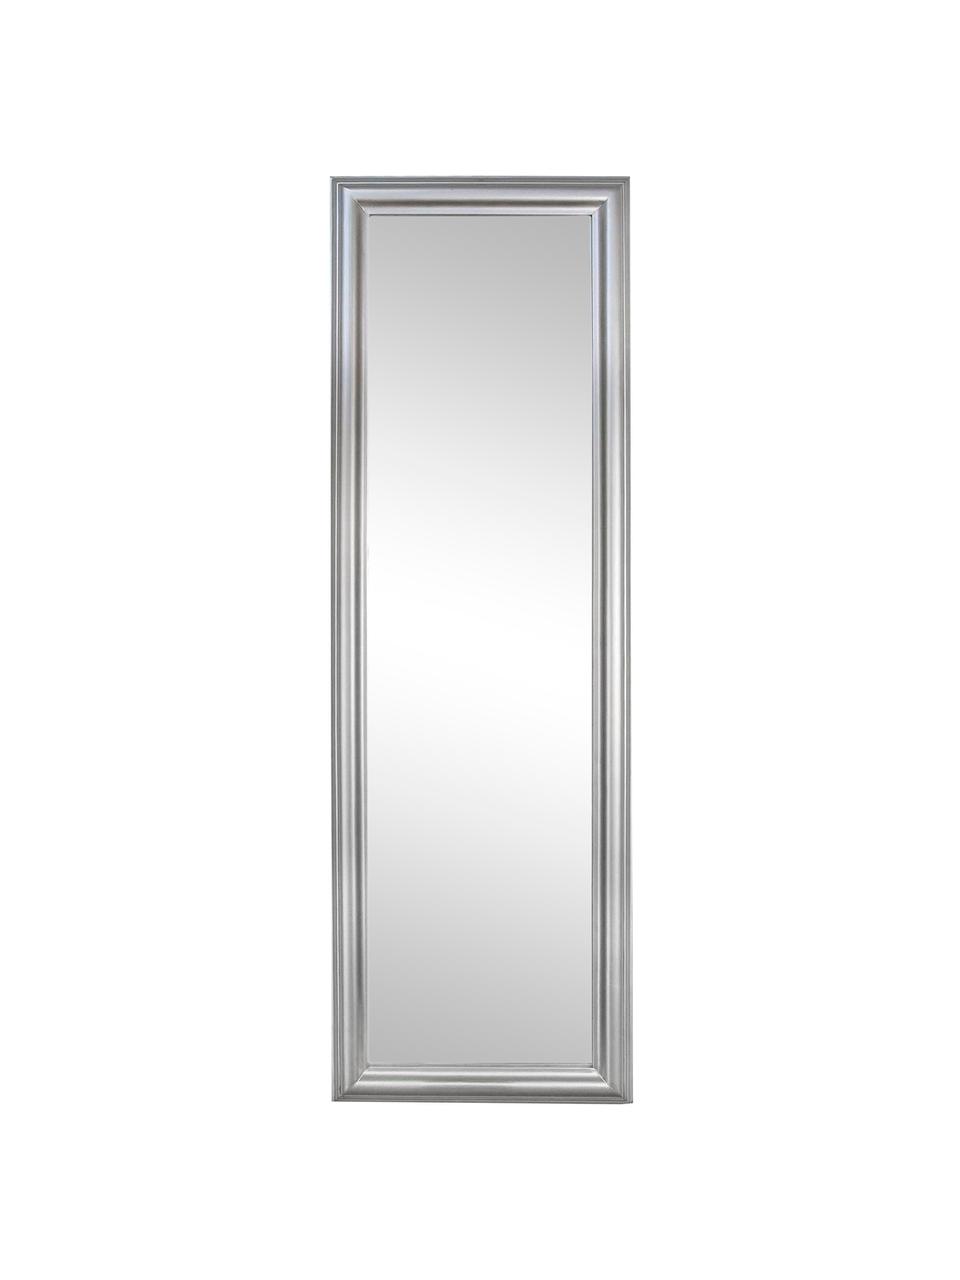 Eckiger Wandspiegel Sanzio mit silbernem Rahmen, Rahmen: Holz, beschichtet, Spiegelfläche: Spiegelglas, Silberfarben, 42 x 132 cm